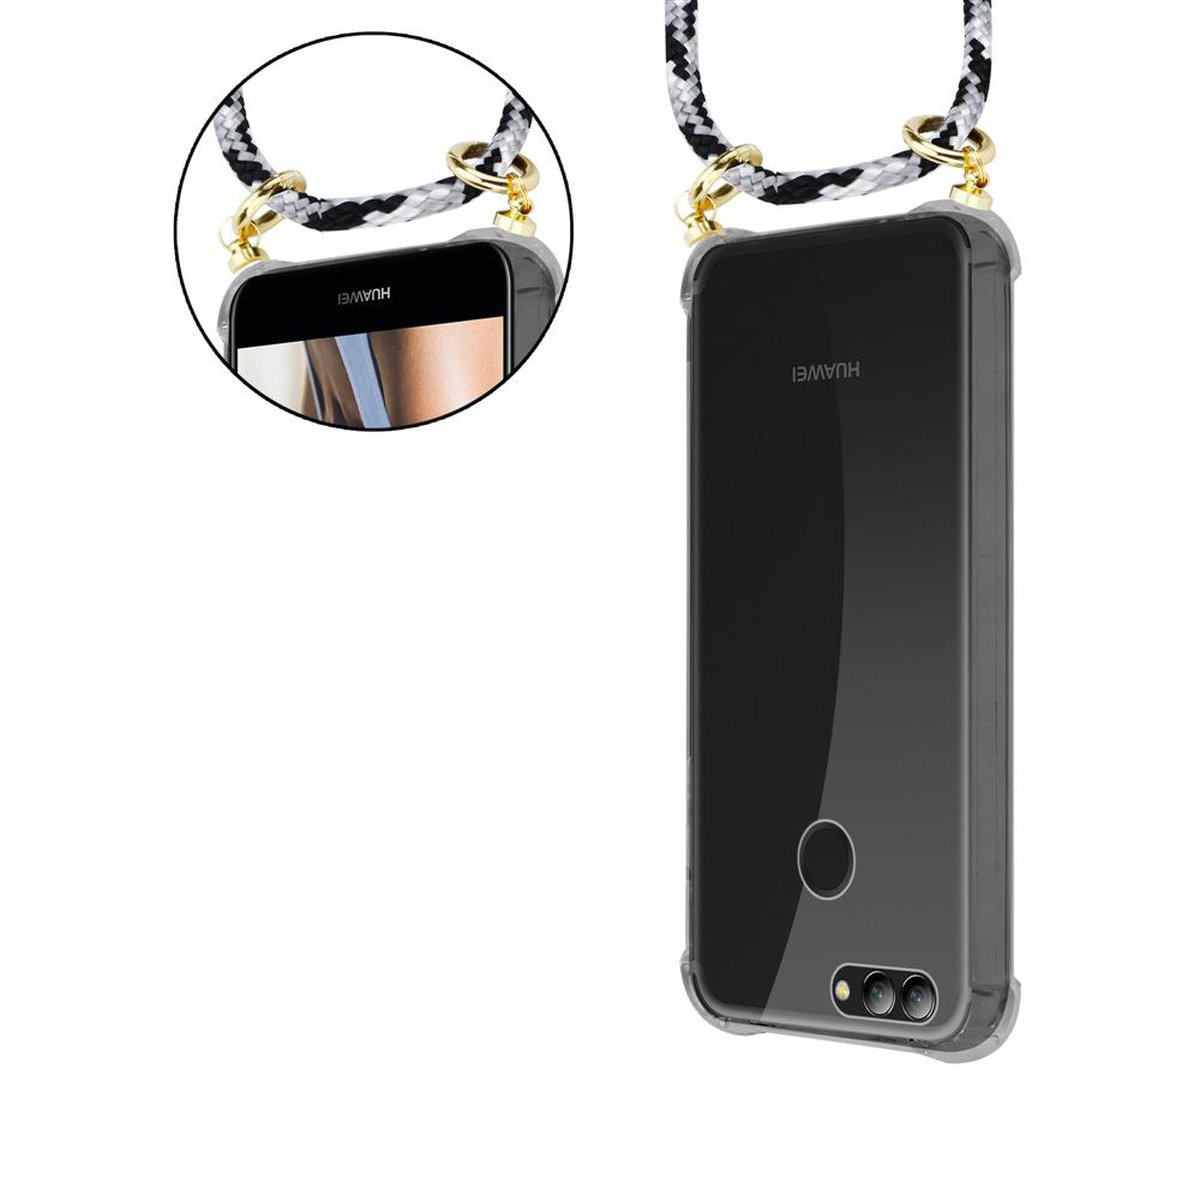 Hülle, 2, Gold SCHWARZ und NOVA Band Huawei, Kette Ringen, mit abnehmbarer CAMOUFLAGE Kordel Handy Backcover, CADORABO